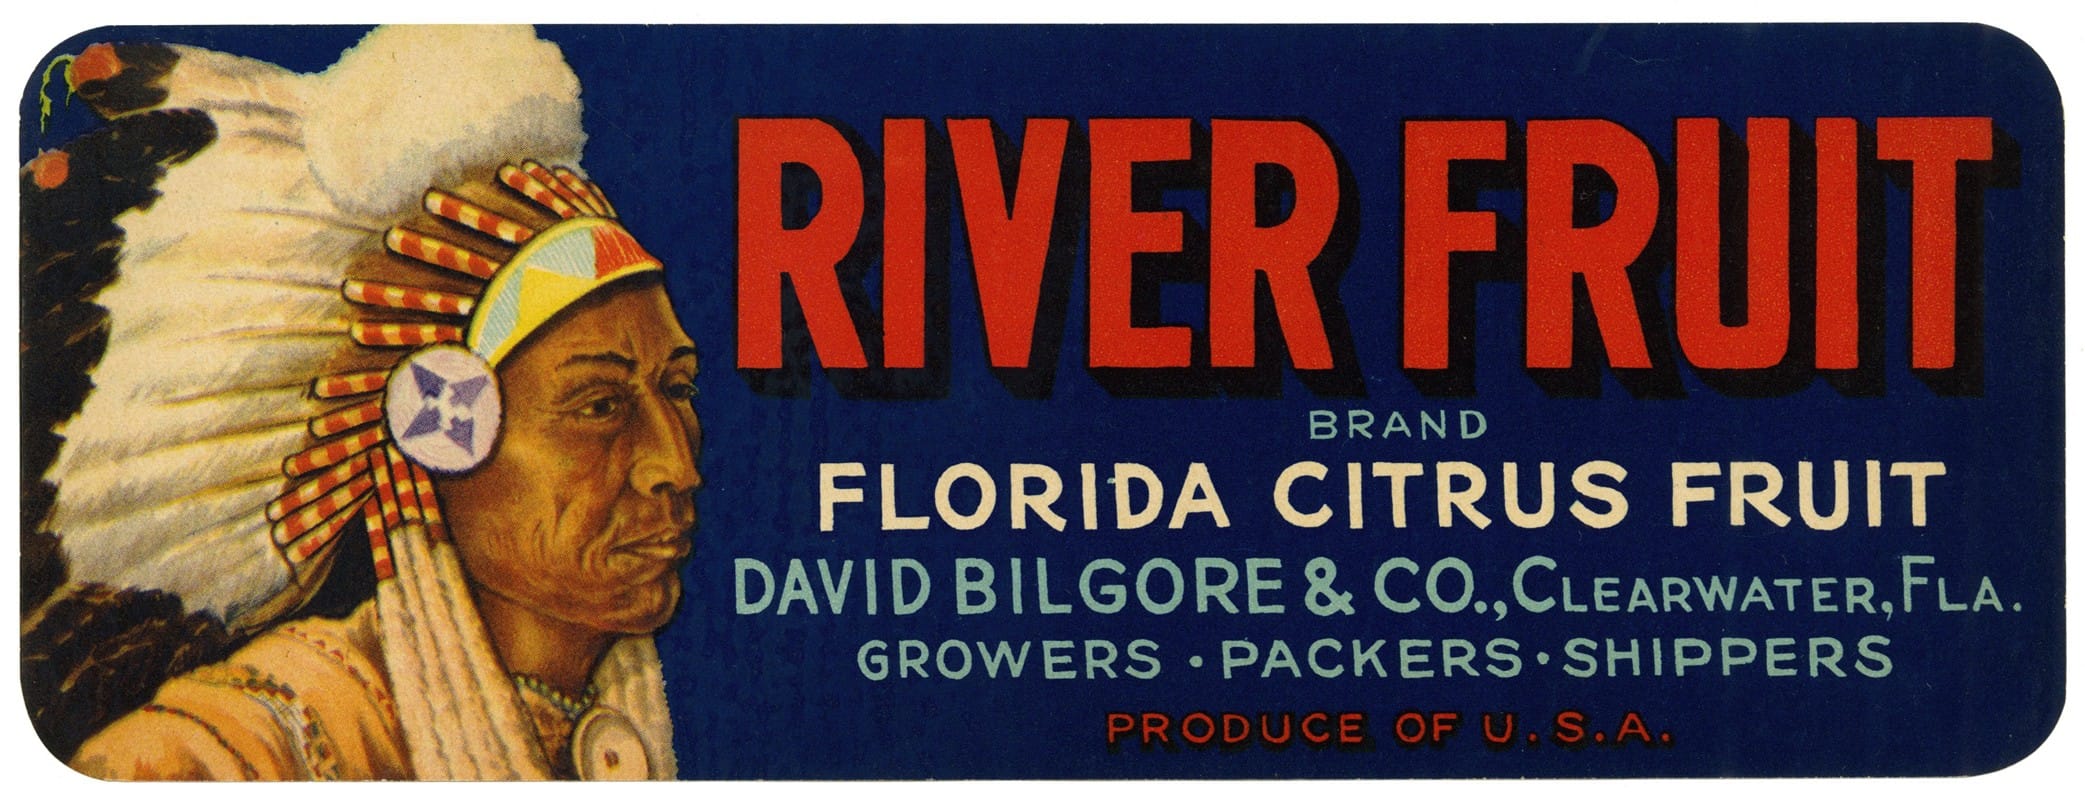 Anonymous - River Fruit Brand Florida Citrus Fruit Label